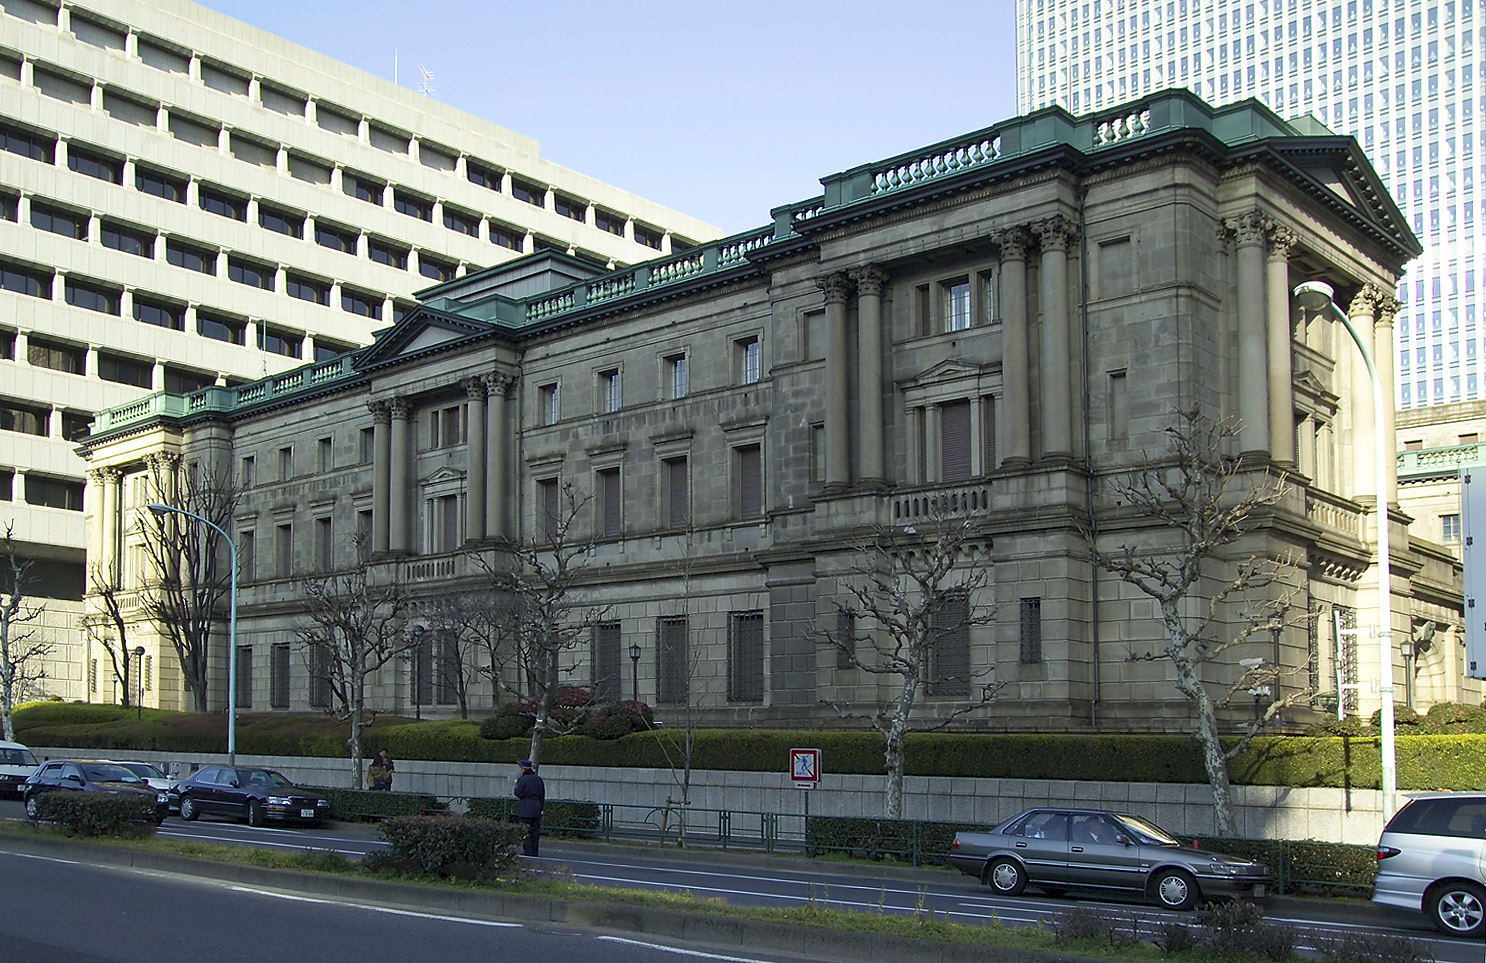 日本銀行 - Wikipedia